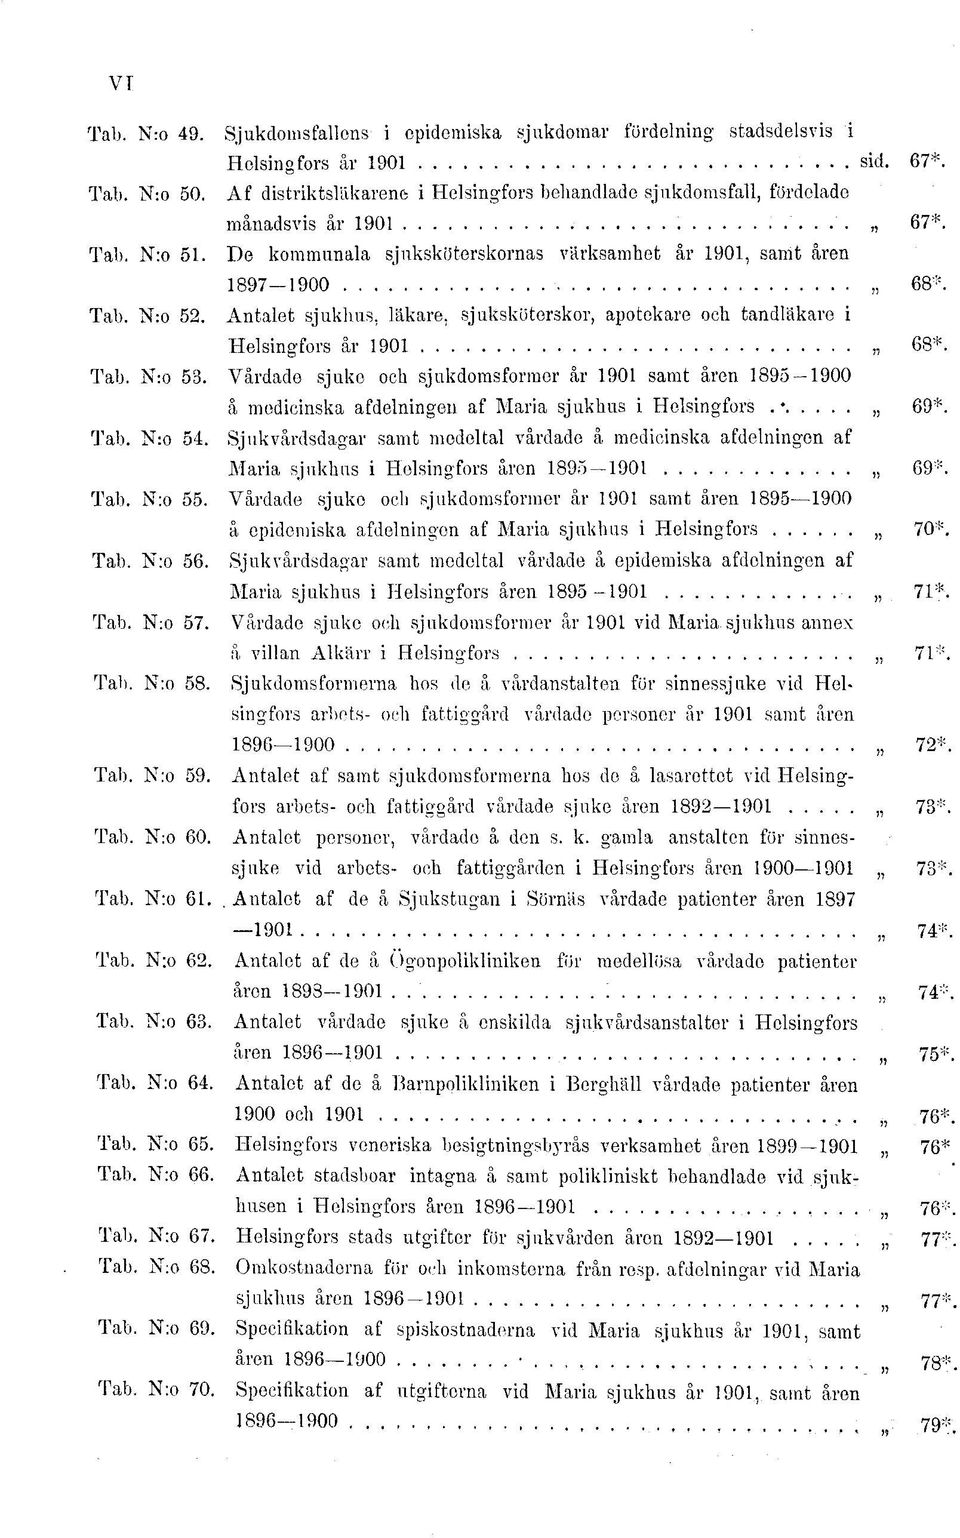 Antalet sjukhus, läkare, sjuksköterskor, apotekare och tandläkare i Helsingfors år 1901 68*. Tab. N:o 53.